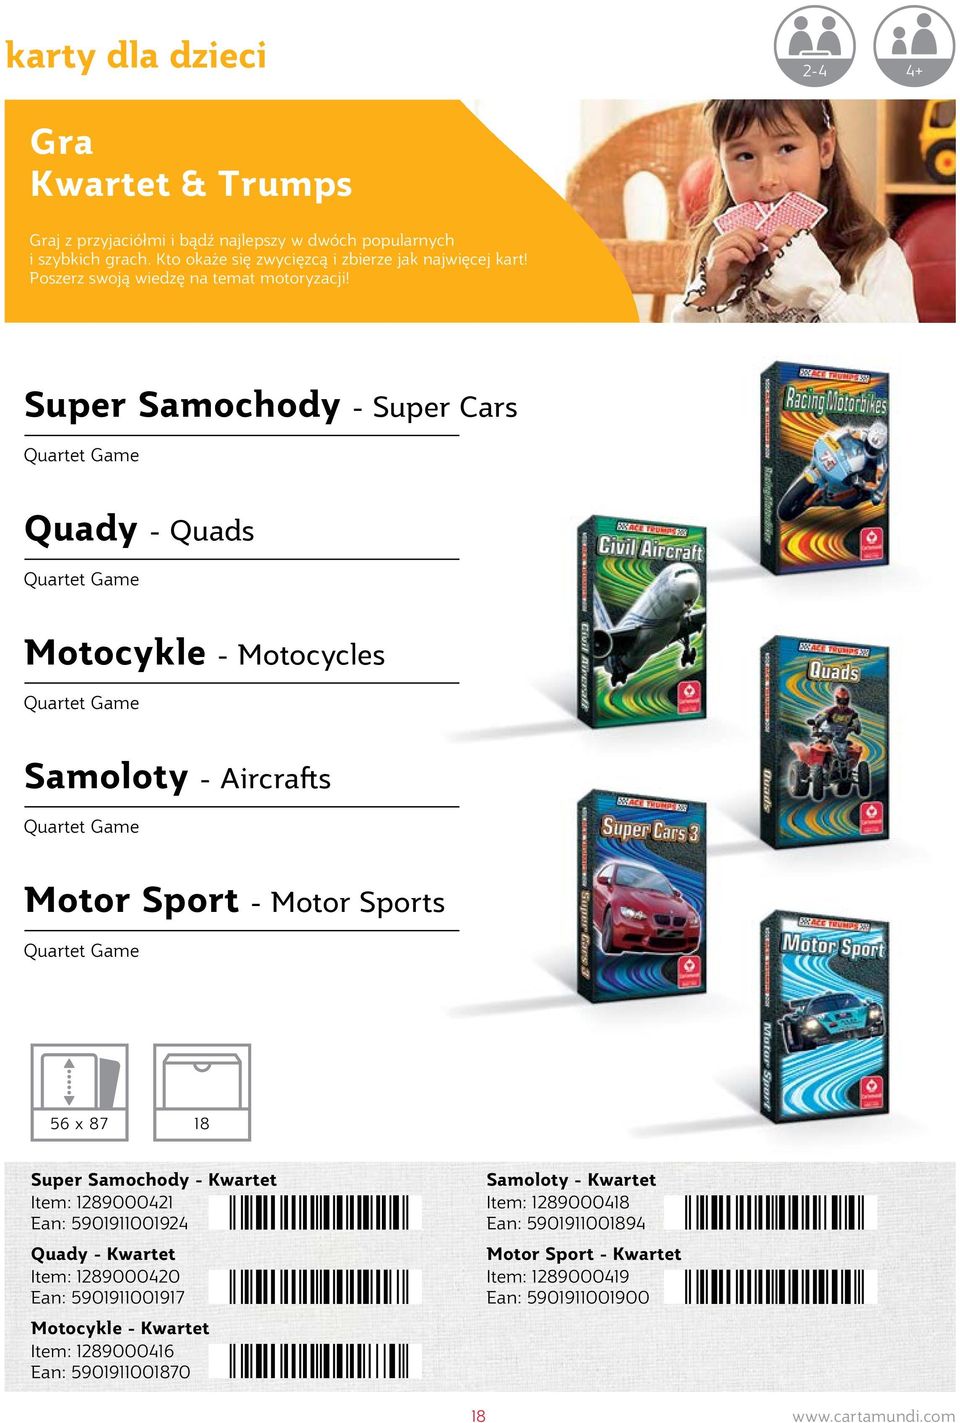 Super Samochody - Super Cars Quartet Game Quady - Quads Quartet Game Motocykle - Motocycles Quartet Game Samoloty - Aircrafts Quartet Game Motor Sport - Motor Sports Quartet